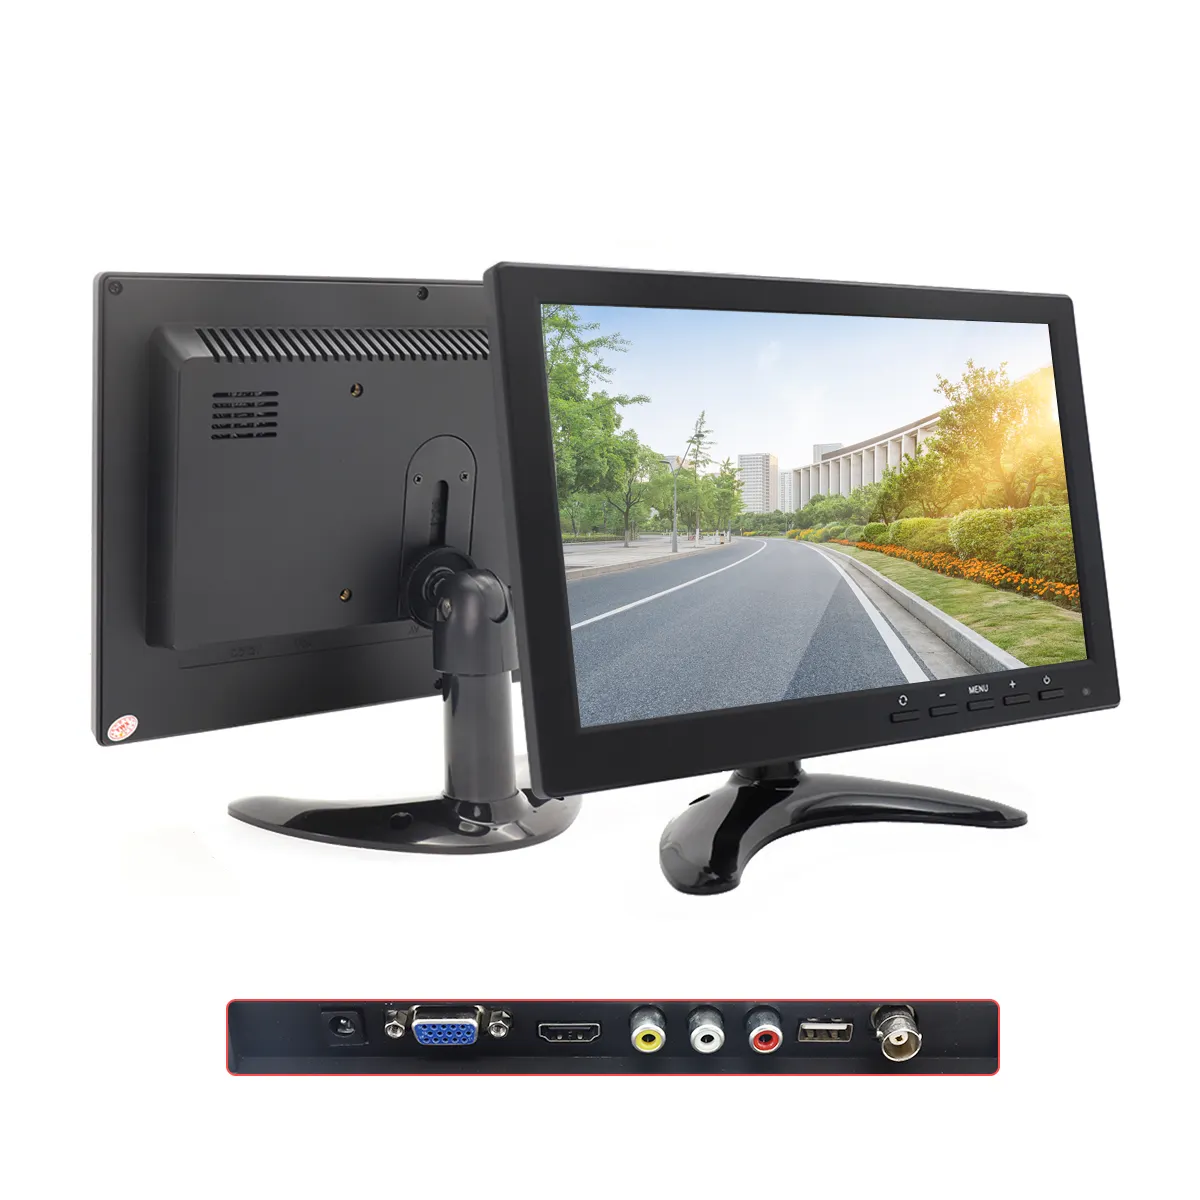 Yuweixin monitor de encosto de cabeça de carro, 10.1 polegadas, monitor multimídia mp5, mp4, com funções usb e sd, rádio, estoque